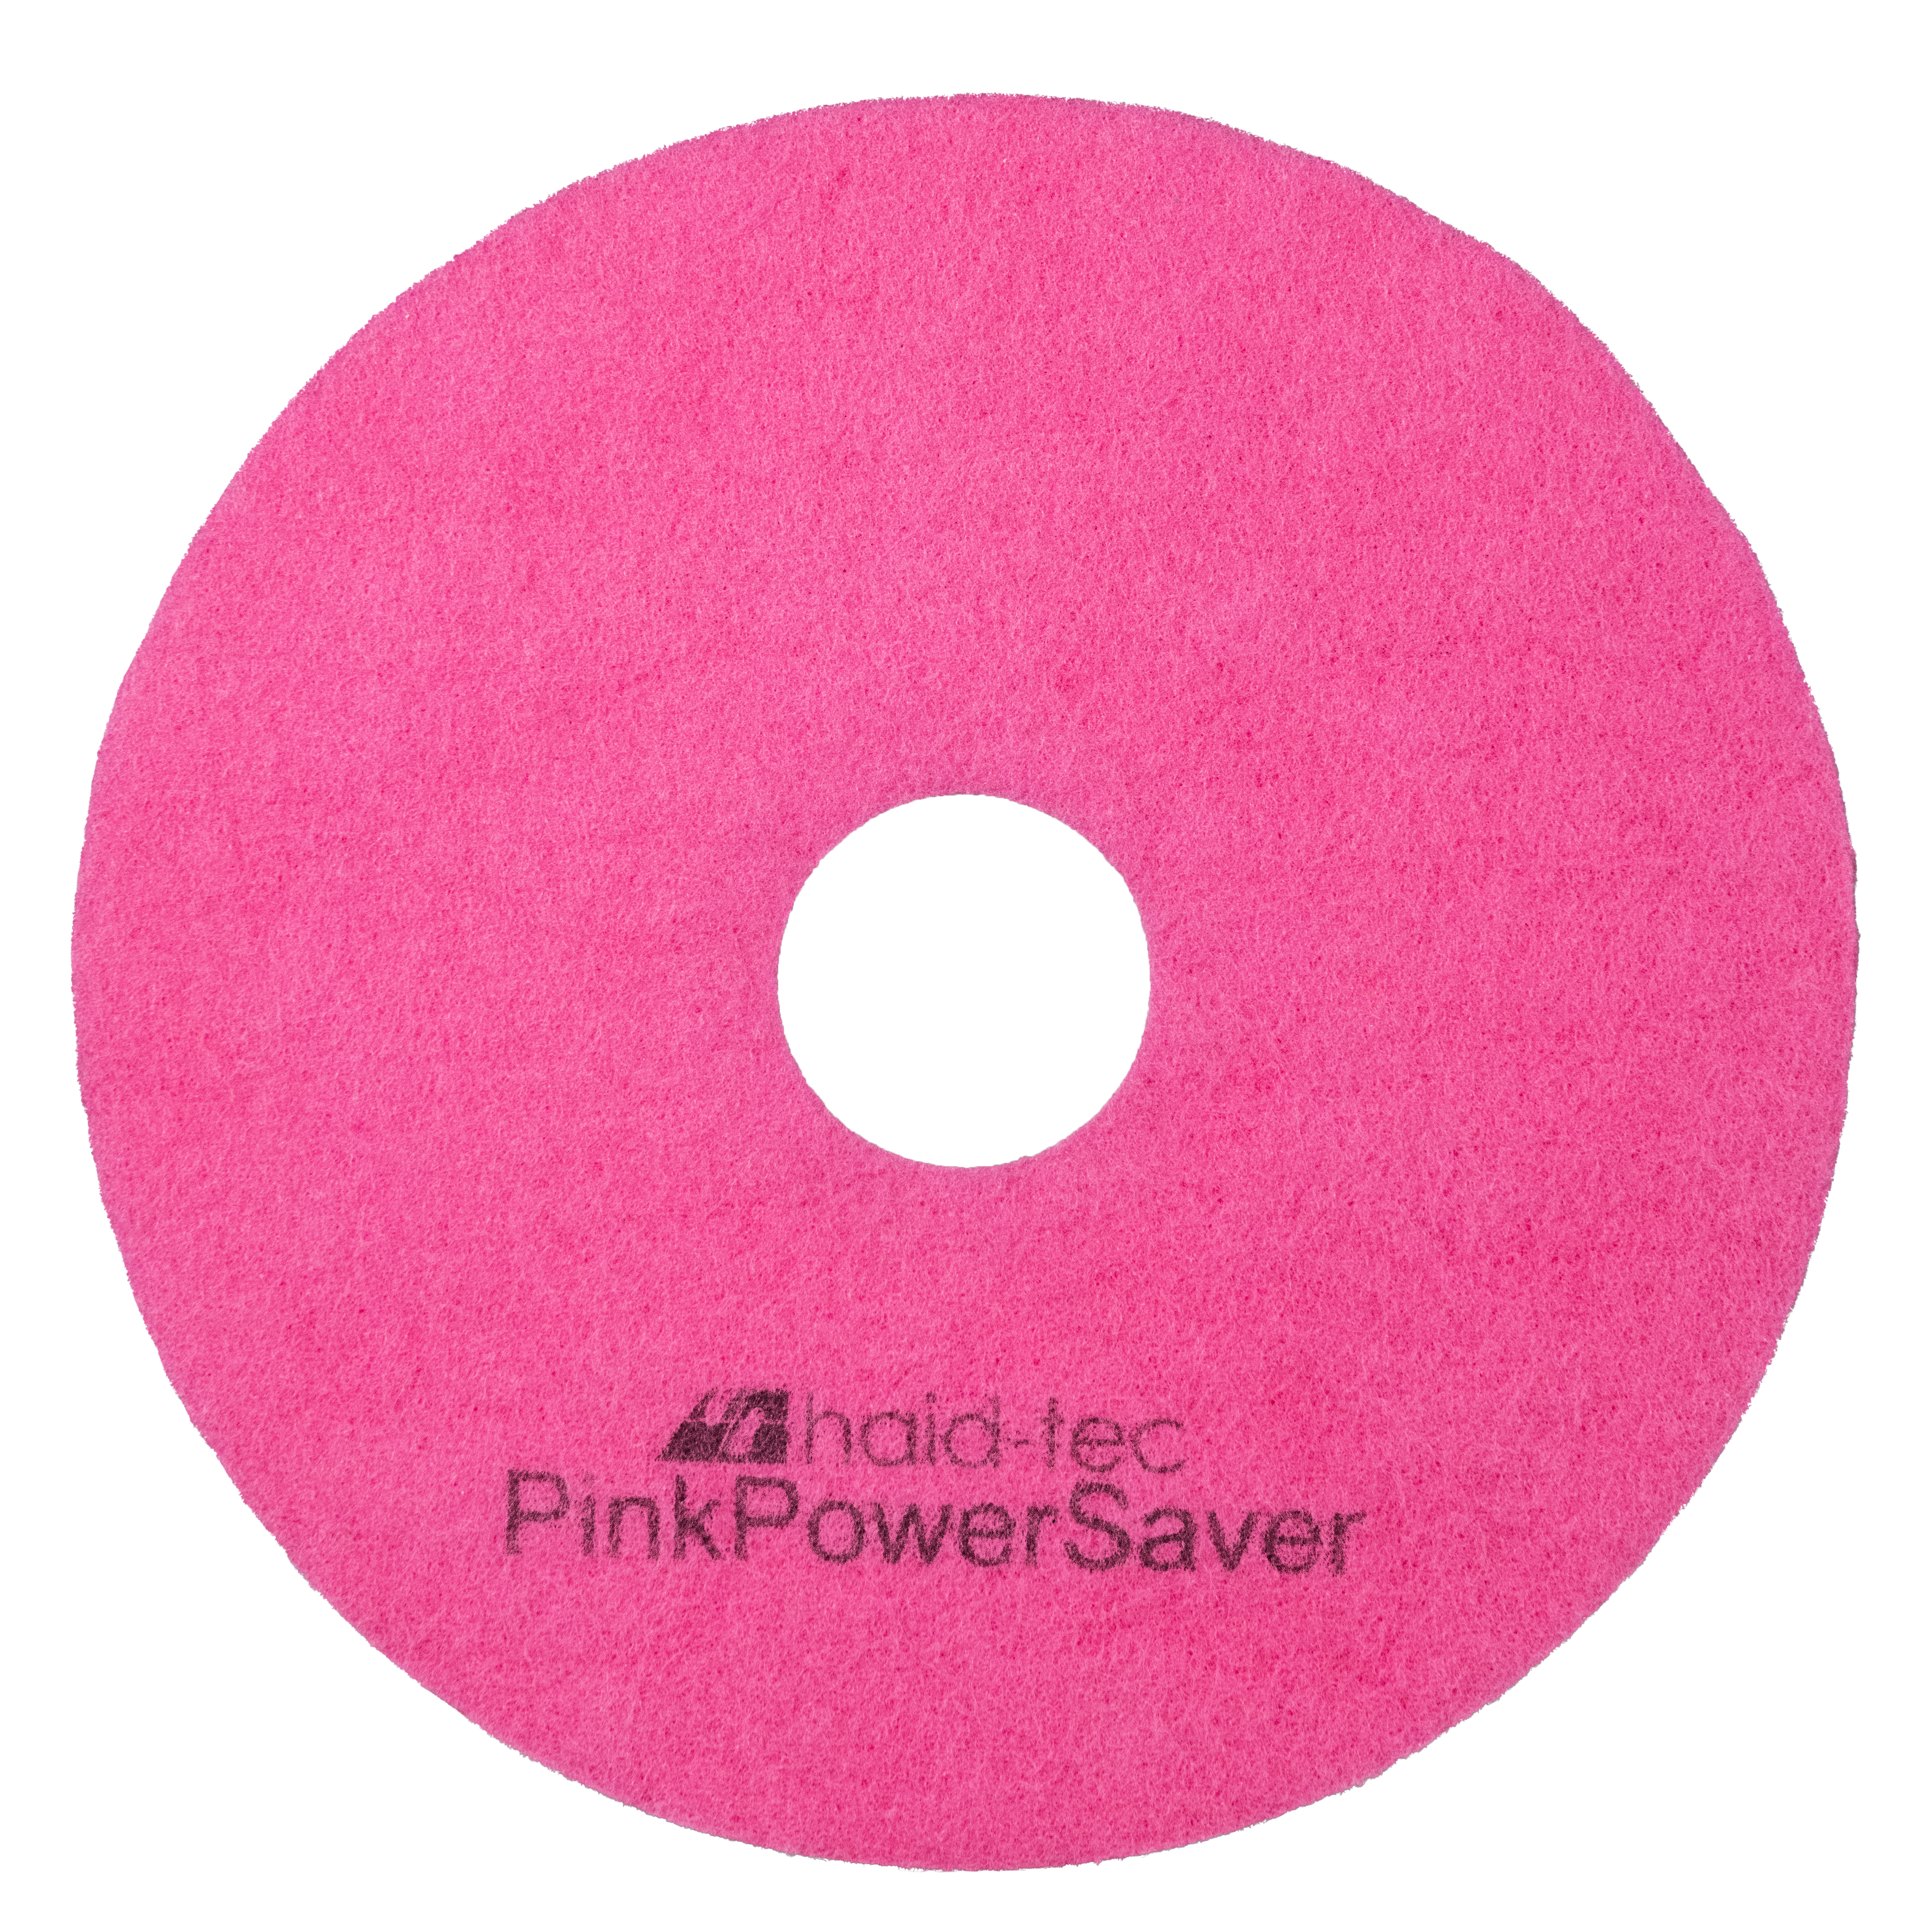 PinkPowerSaver Pad 6.5Zoll/165mm für i-mop Lite, Pad für Kompakt-Scheuersaugmaschine - Melaminpad für die Intensiv- und Unterhaltsreinigung